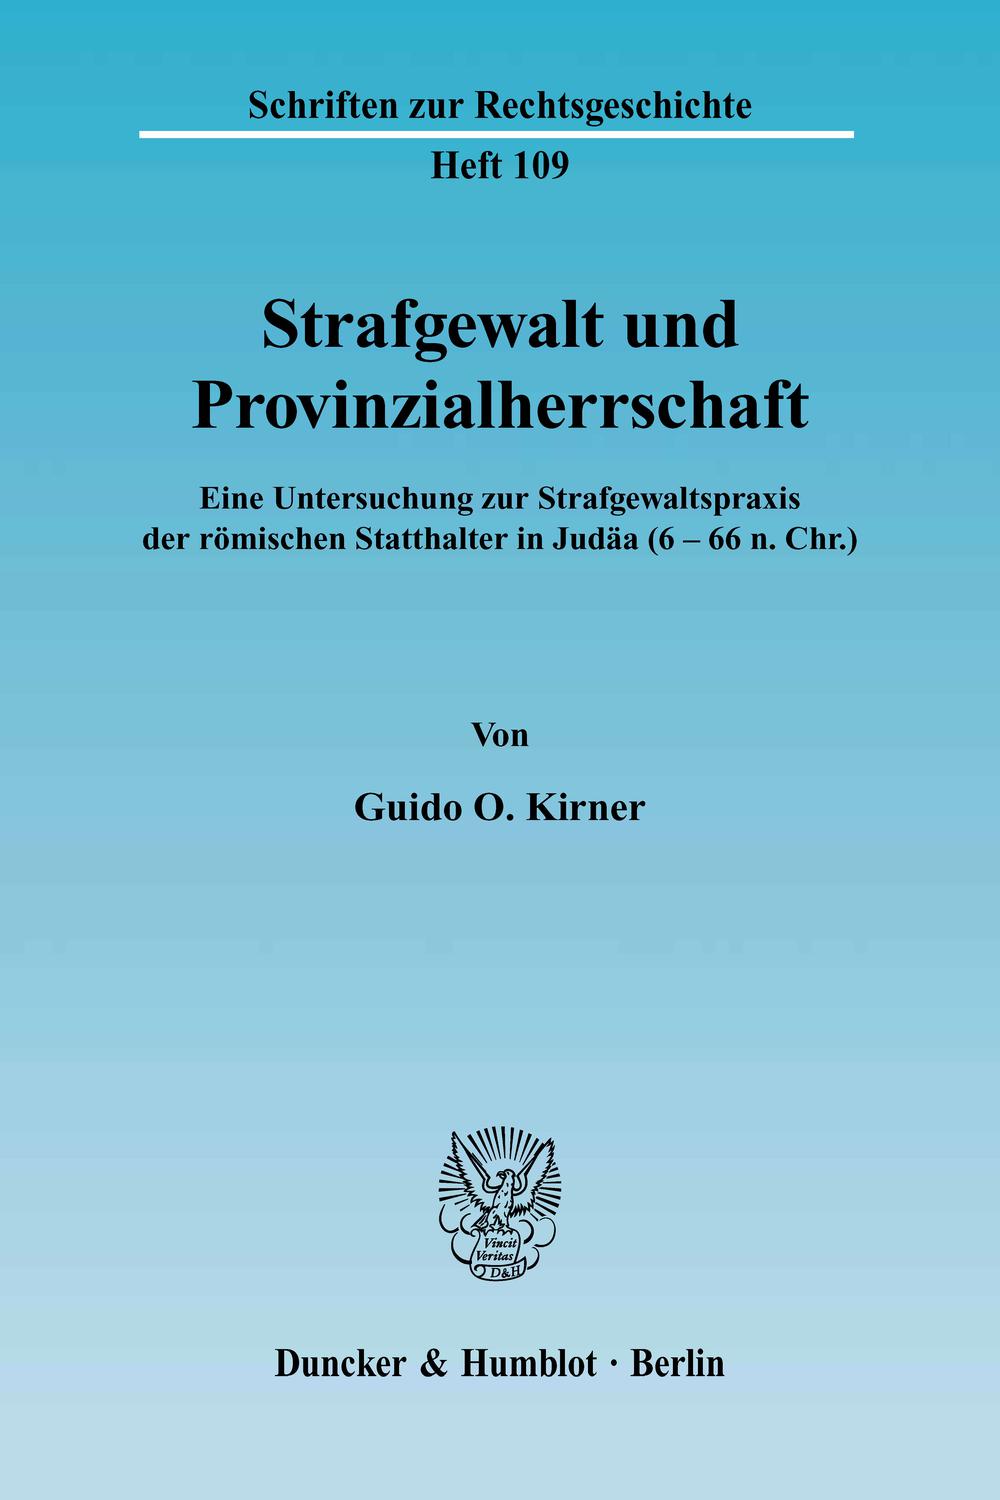 Strafgewalt und Provinzialherrschaft. - Guido O. Kirner